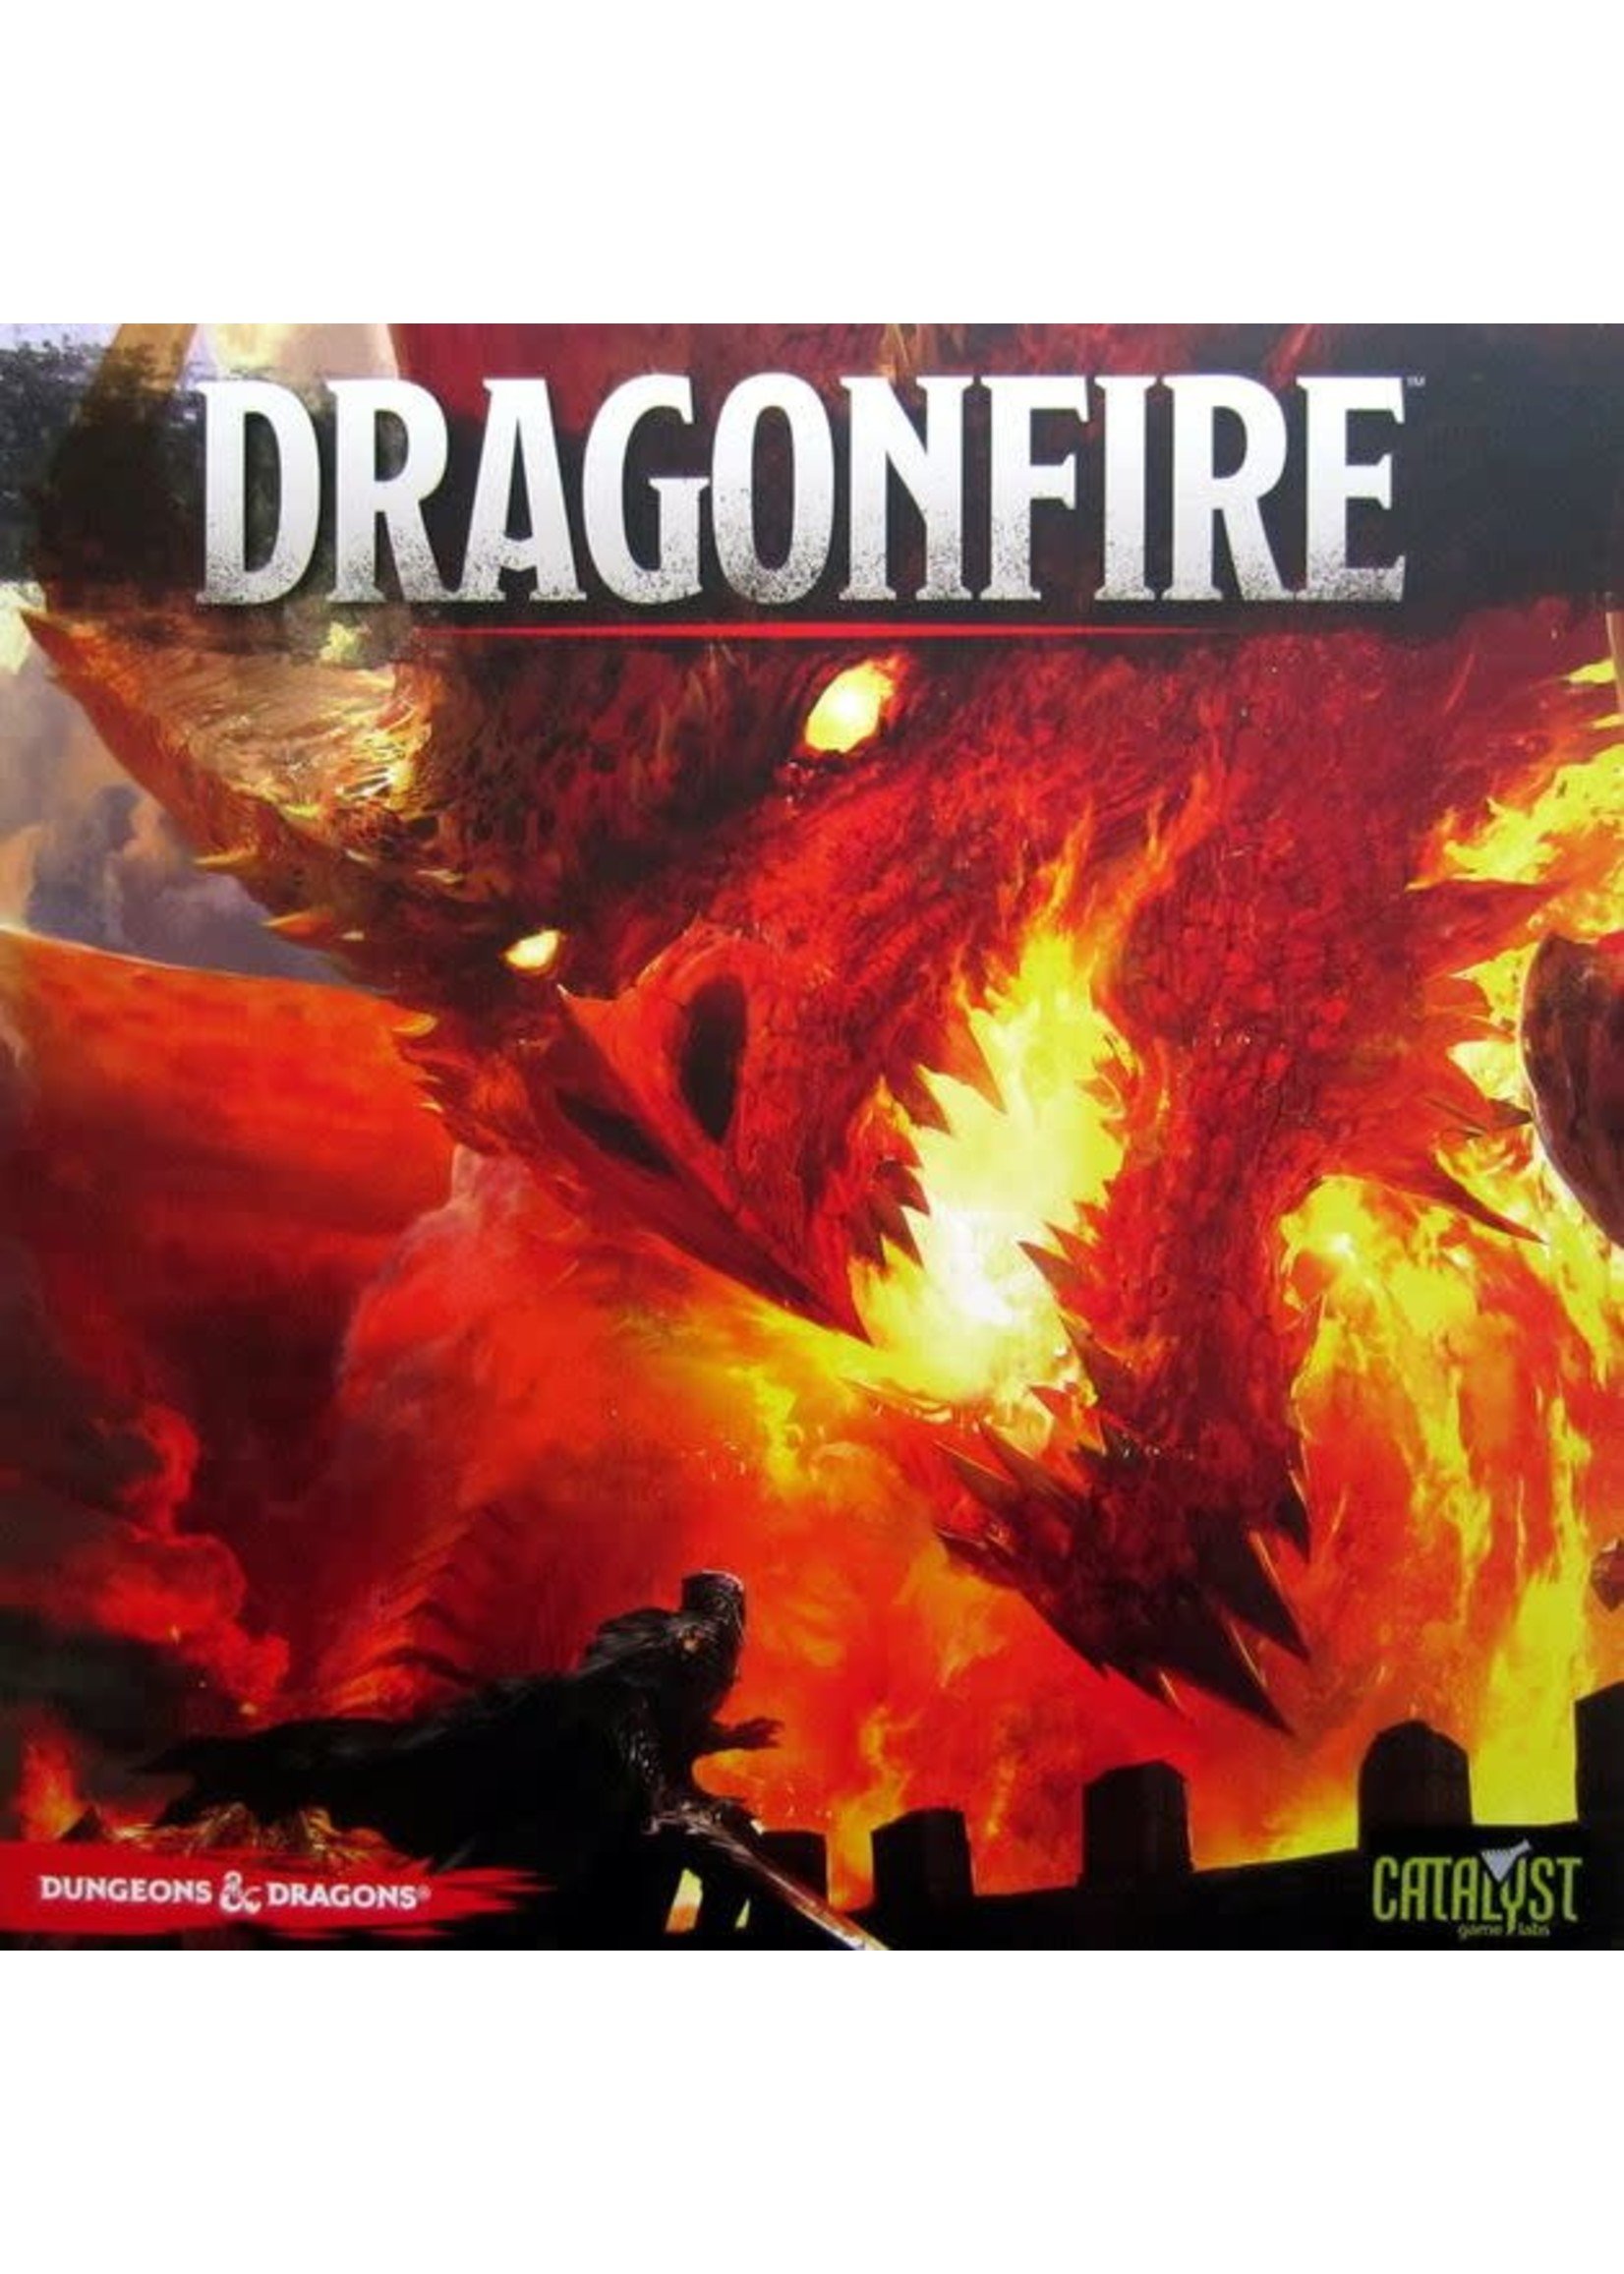 RENTAL - Dragonfire 4 Lb 12.6 oz